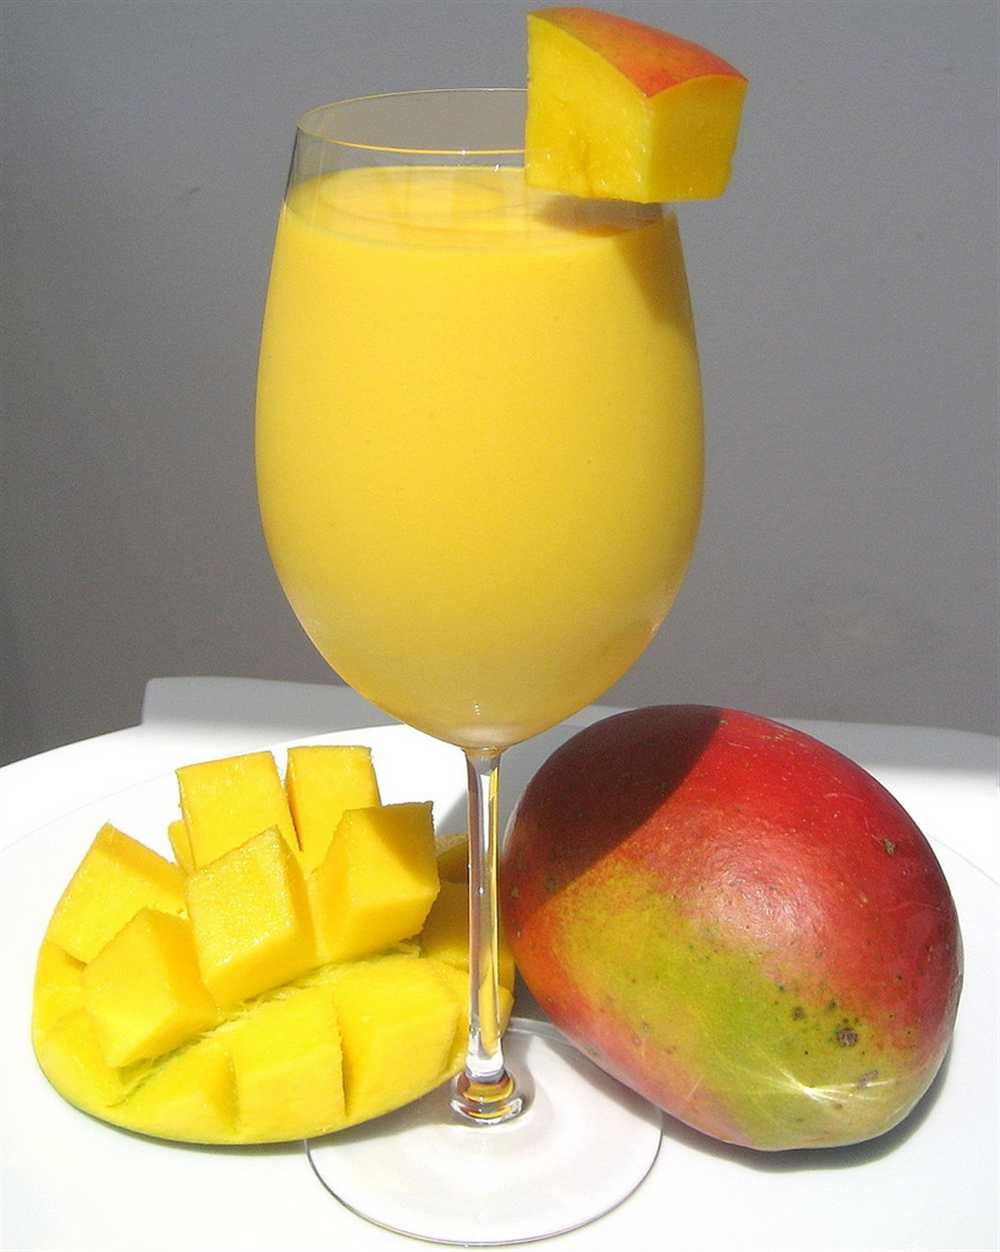 Sinh tố xoài là đồ uống chứa nhiều vitamin C và đây là một đồ uống giải khát được rất nhiều người yêu thích.